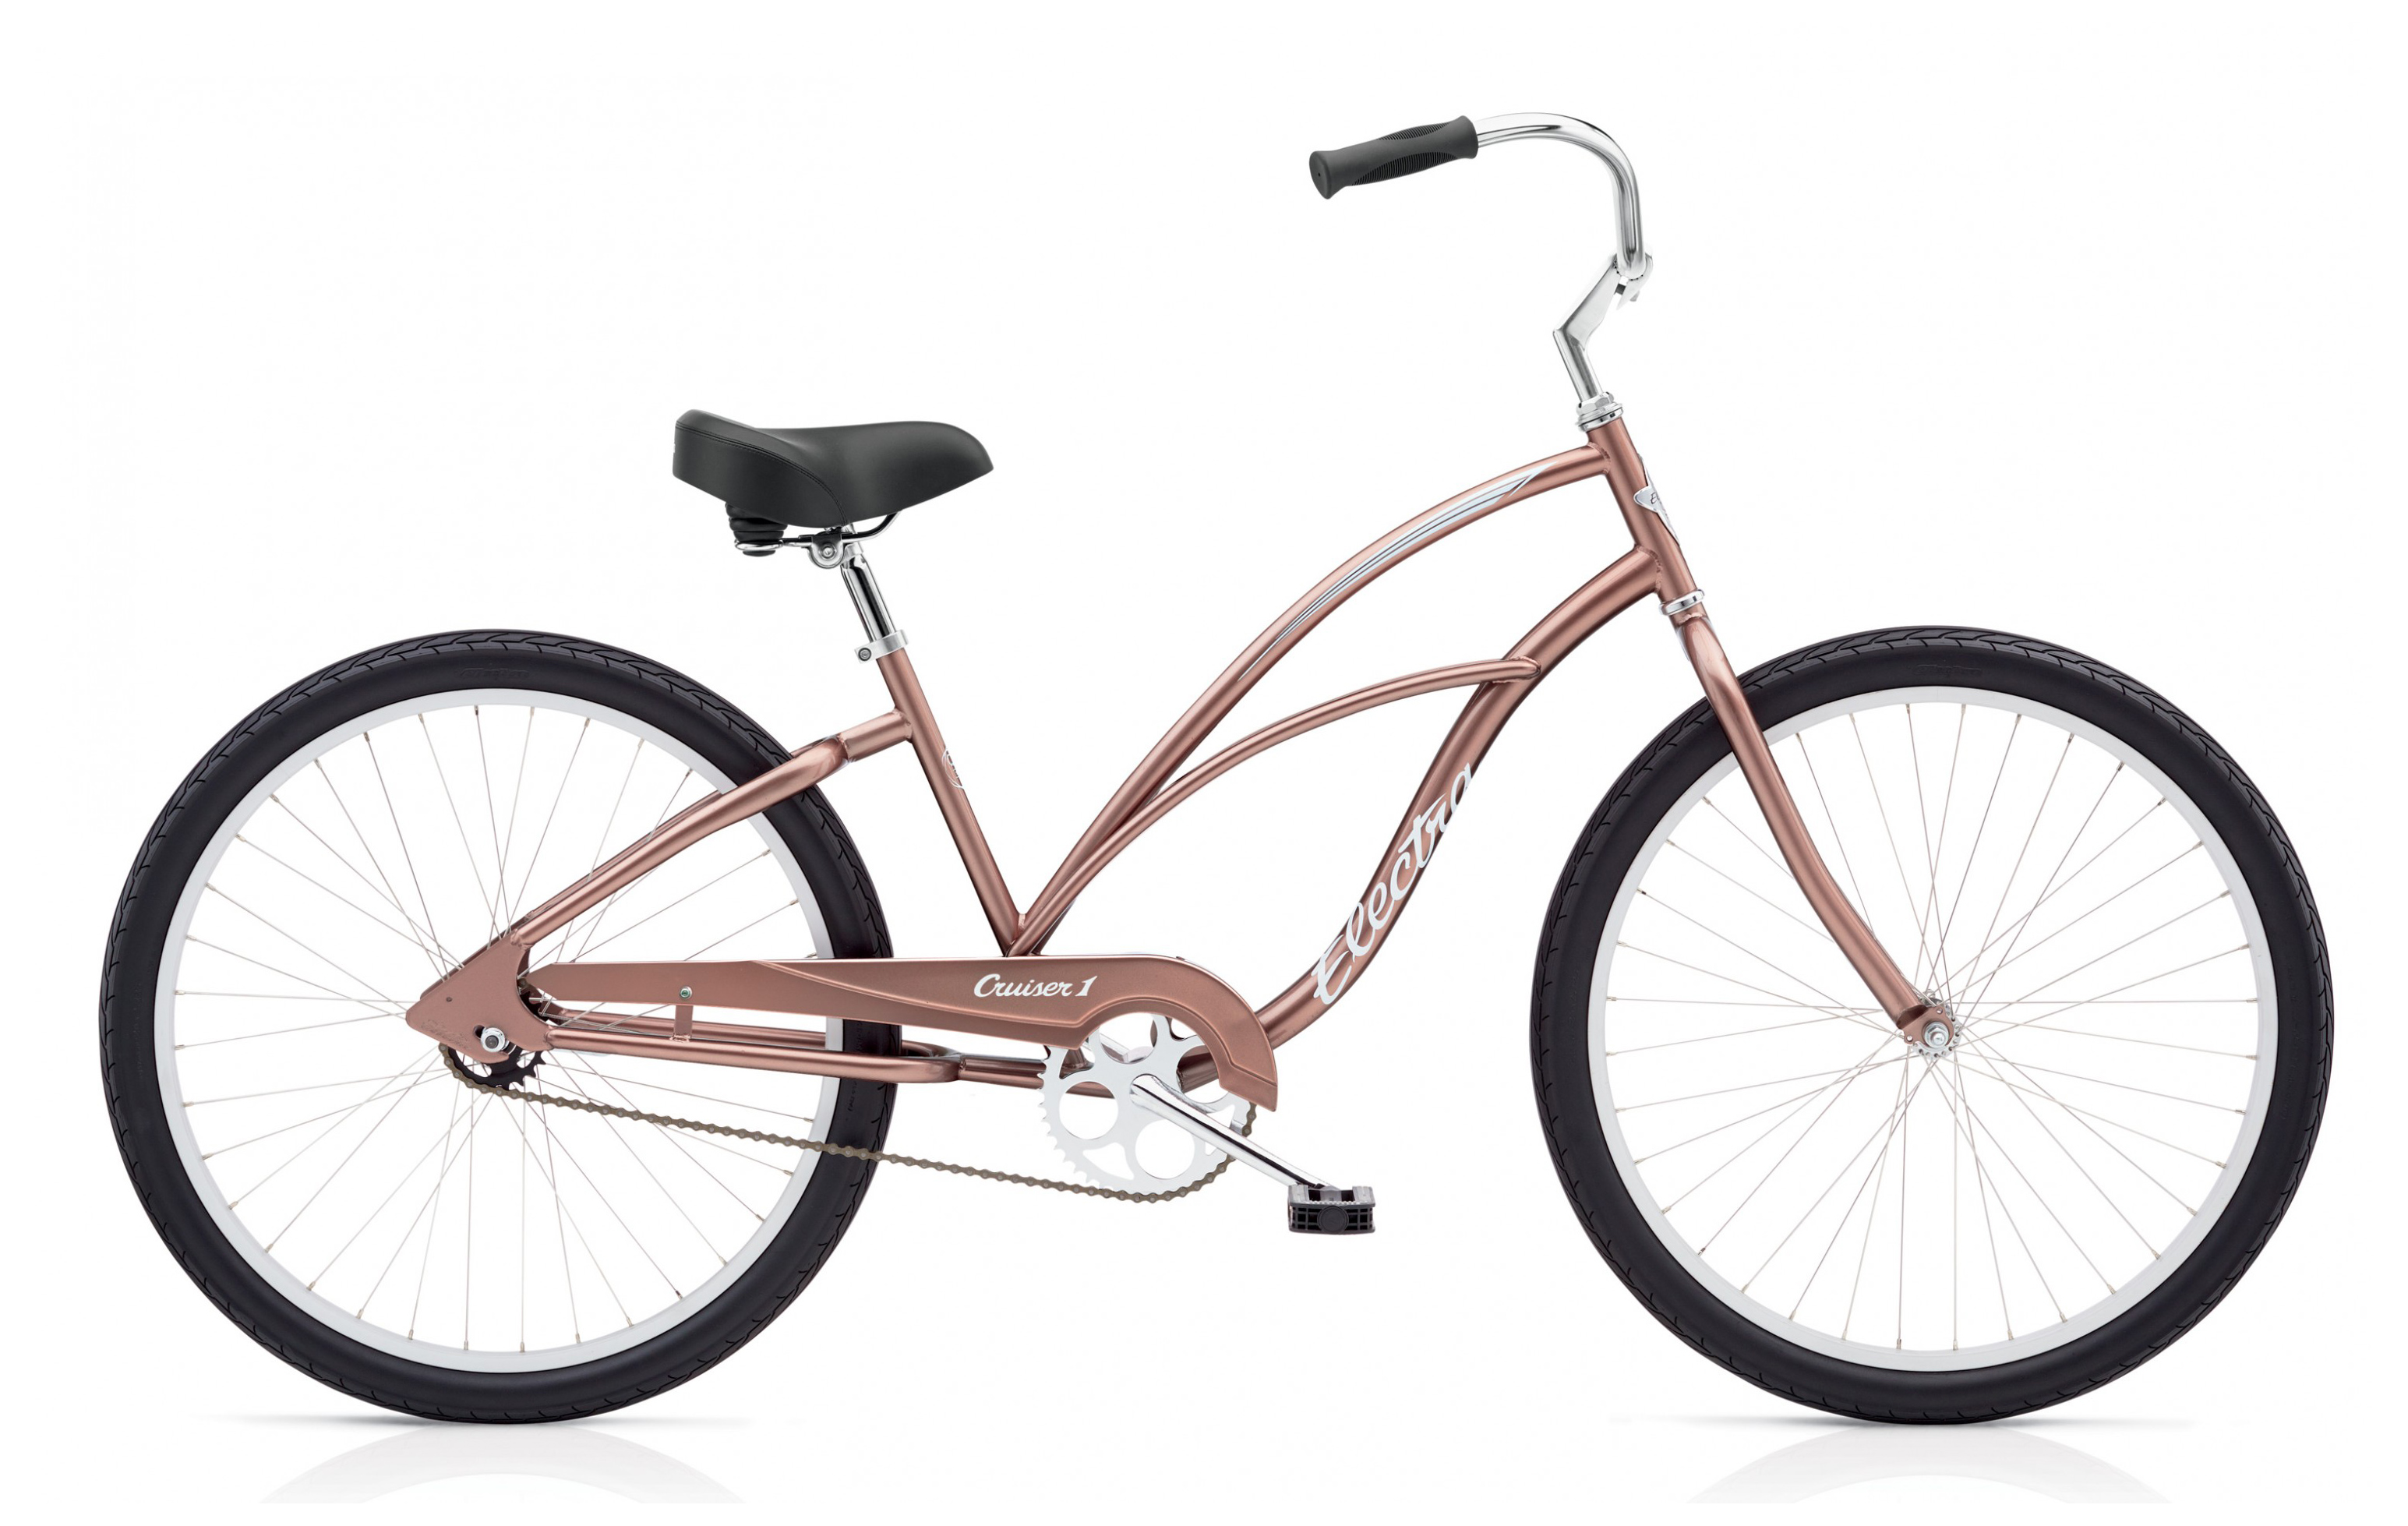  Отзывы о Женском велосипеде Electra Cruiser 1 NON-US ladies 2019